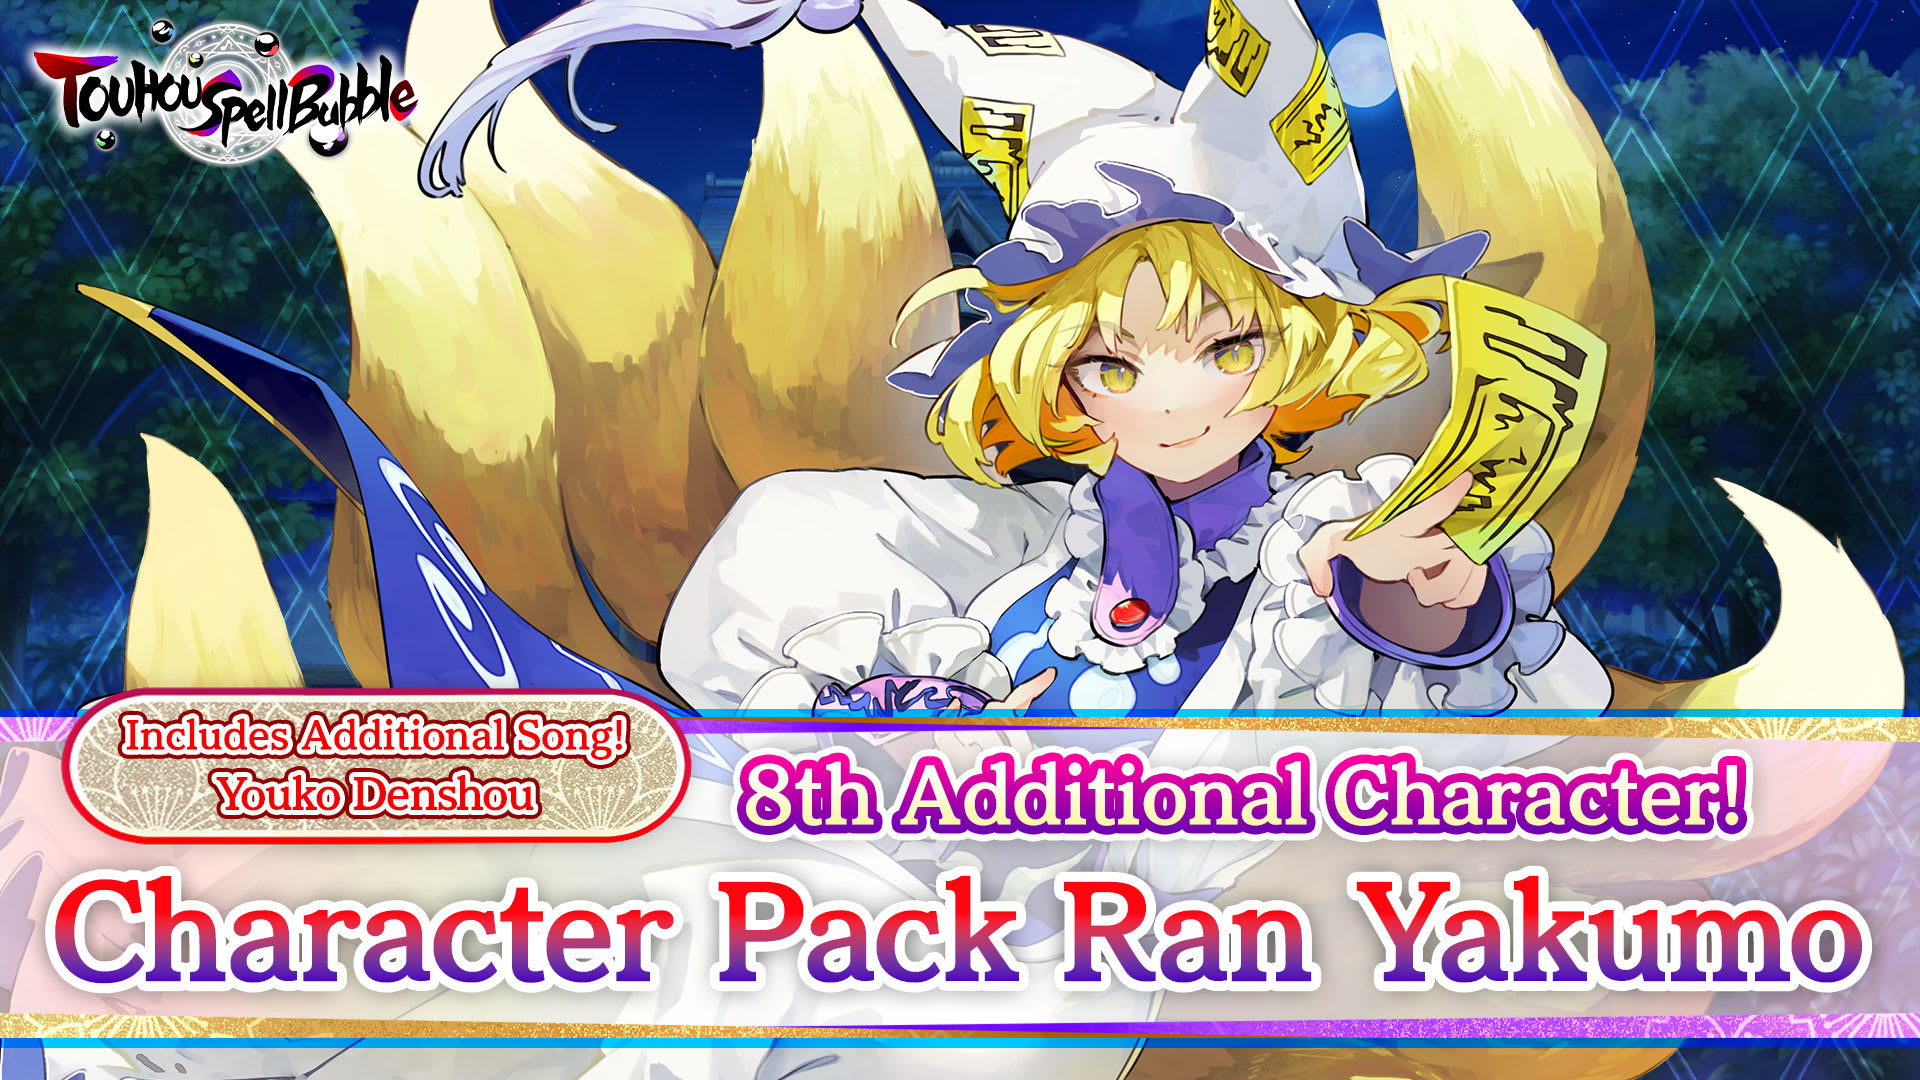 Character Pack Ran Yakumo